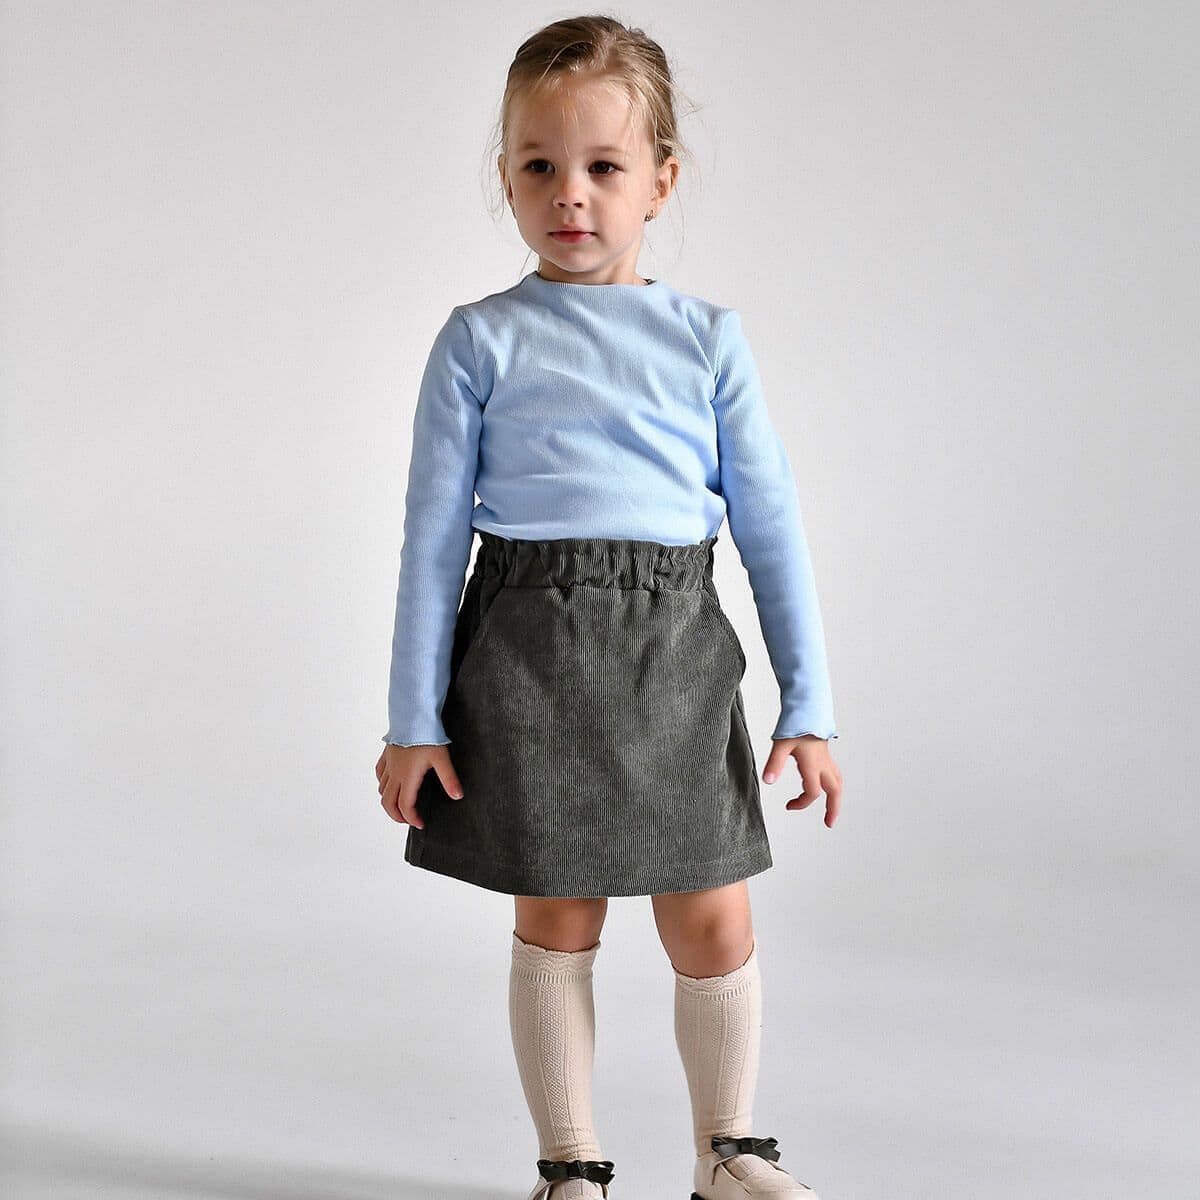 Купить юбку для девочки в садик детская нарядная вельветовая хаки